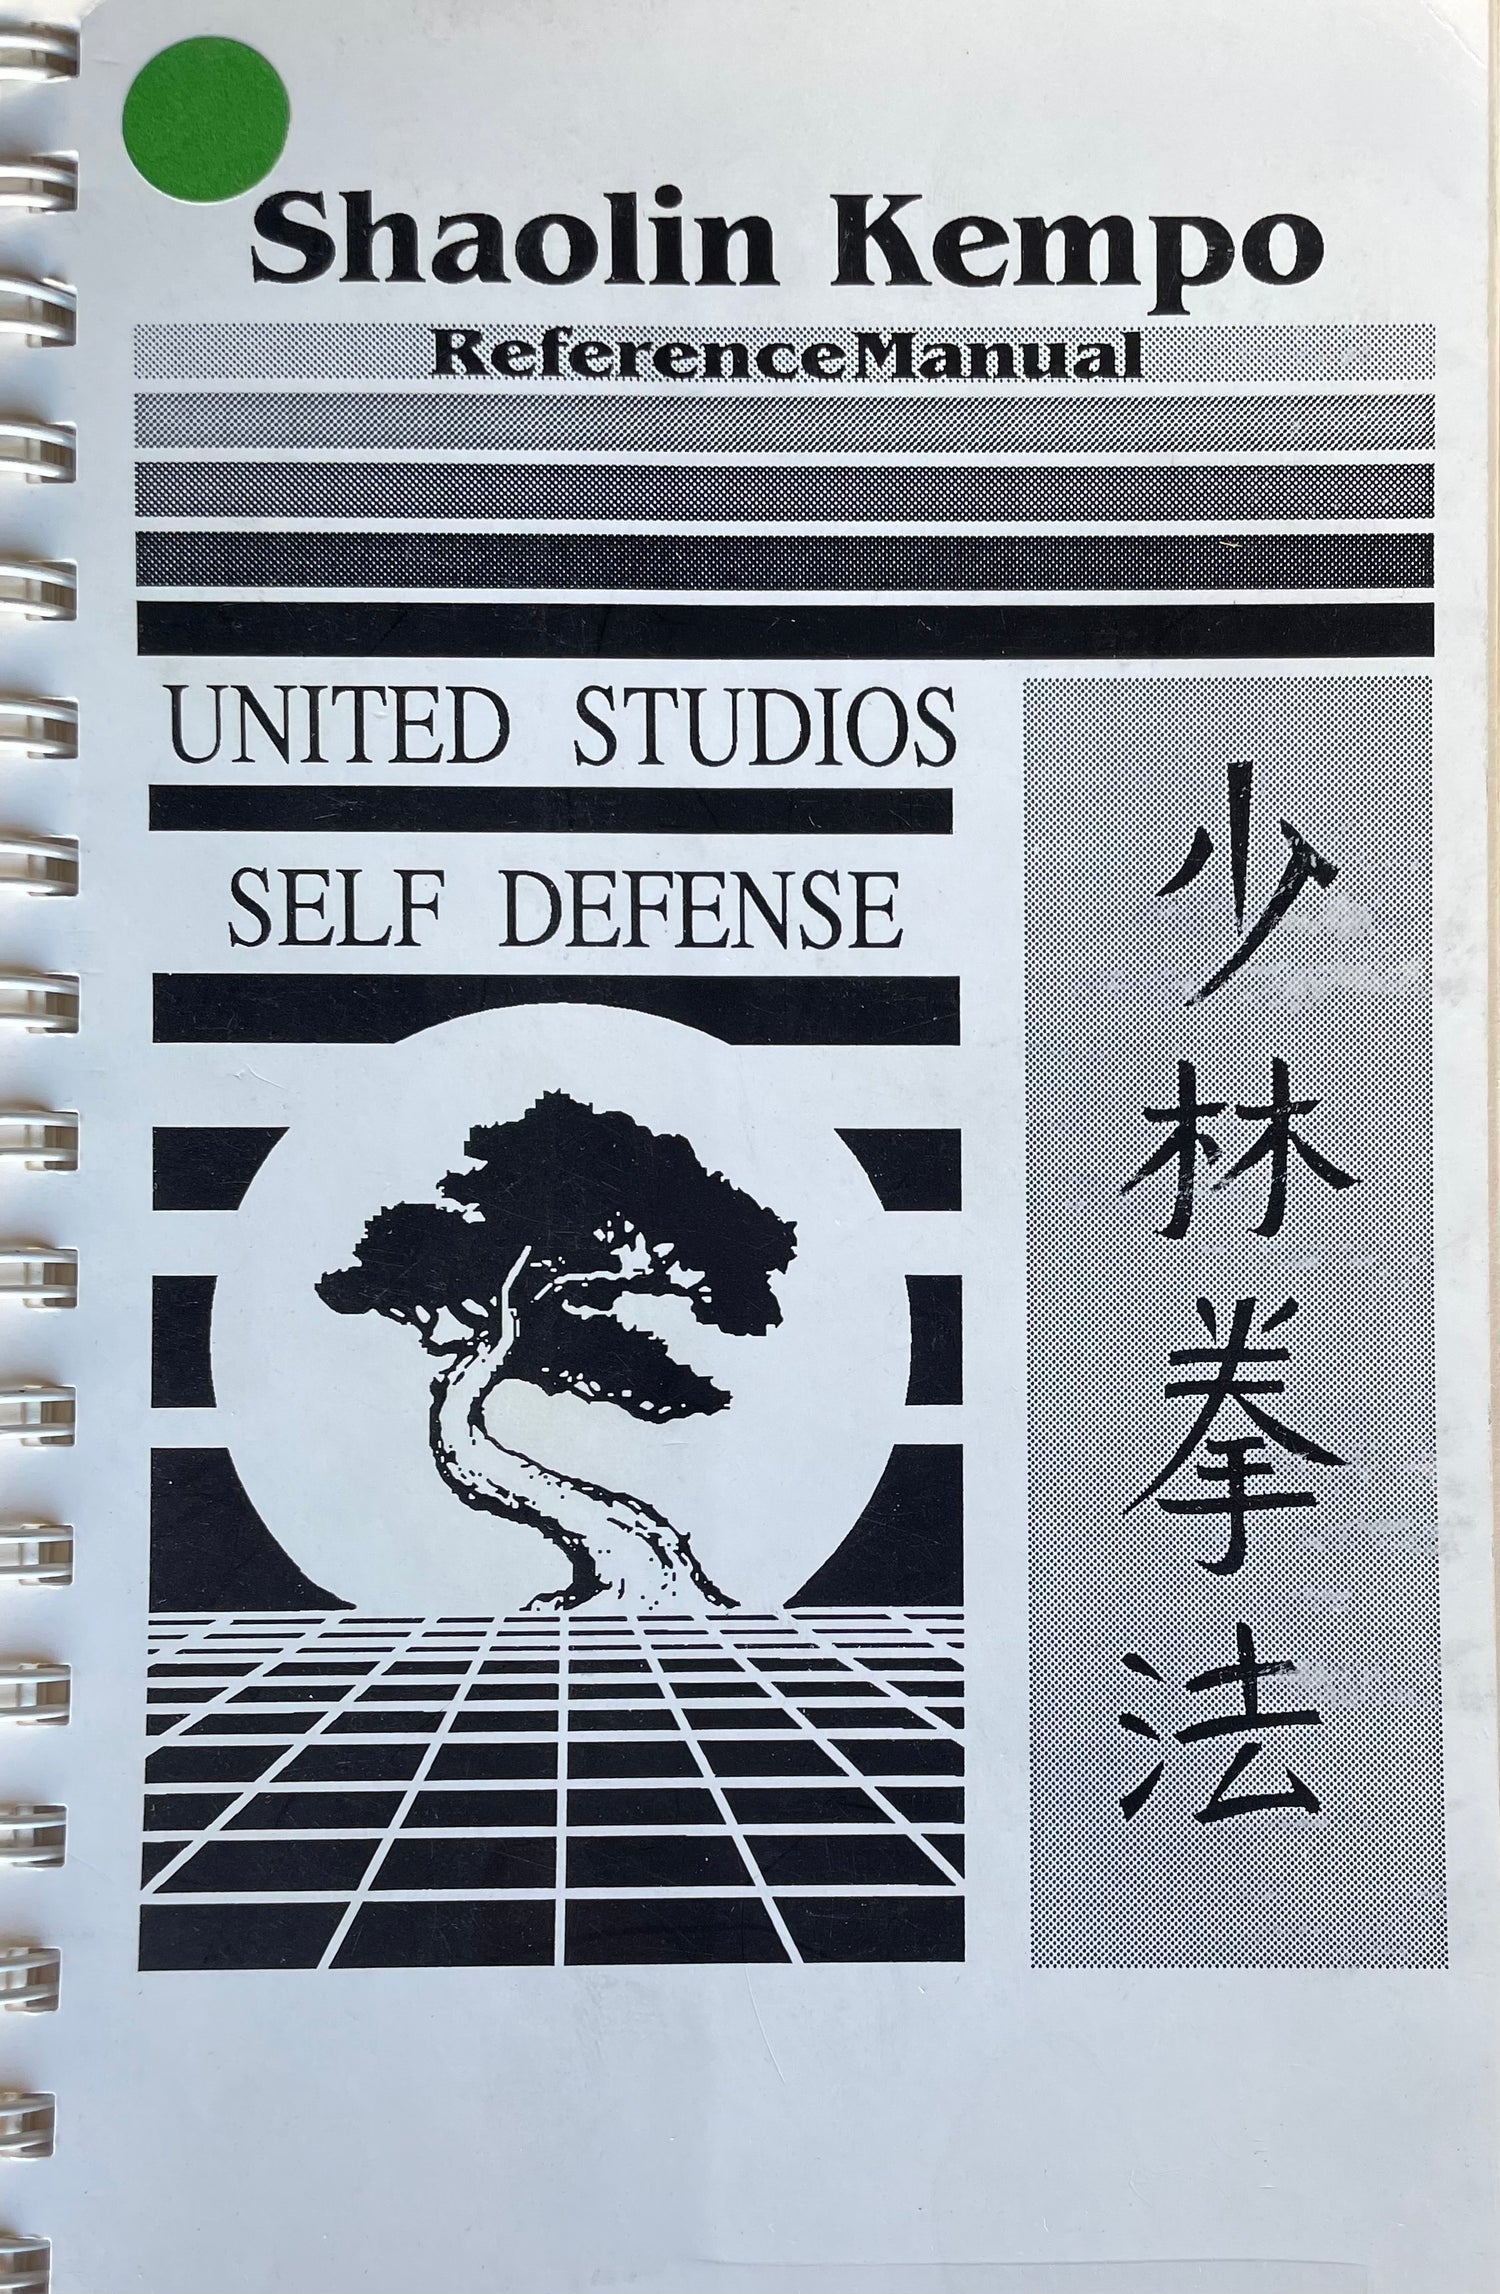 Libro Shaolin Kempo United Studios of Self Defense (seminuevo)